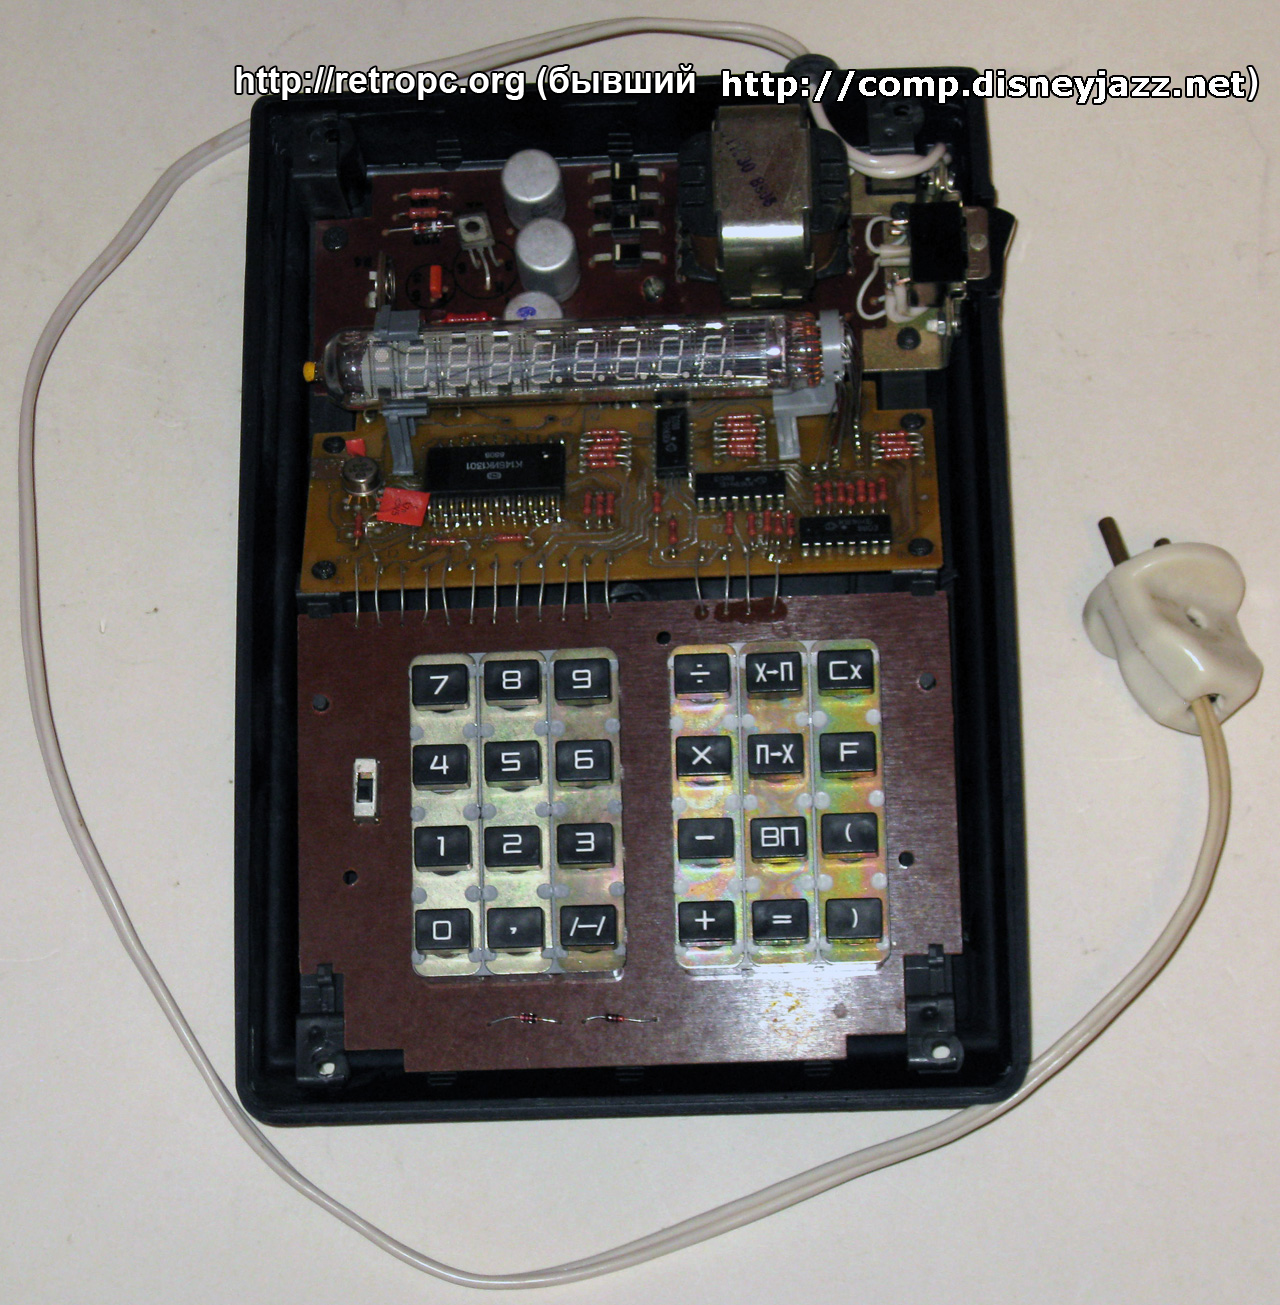 Калькулятор Электроника МКШ-2 вид со снятой крышкой